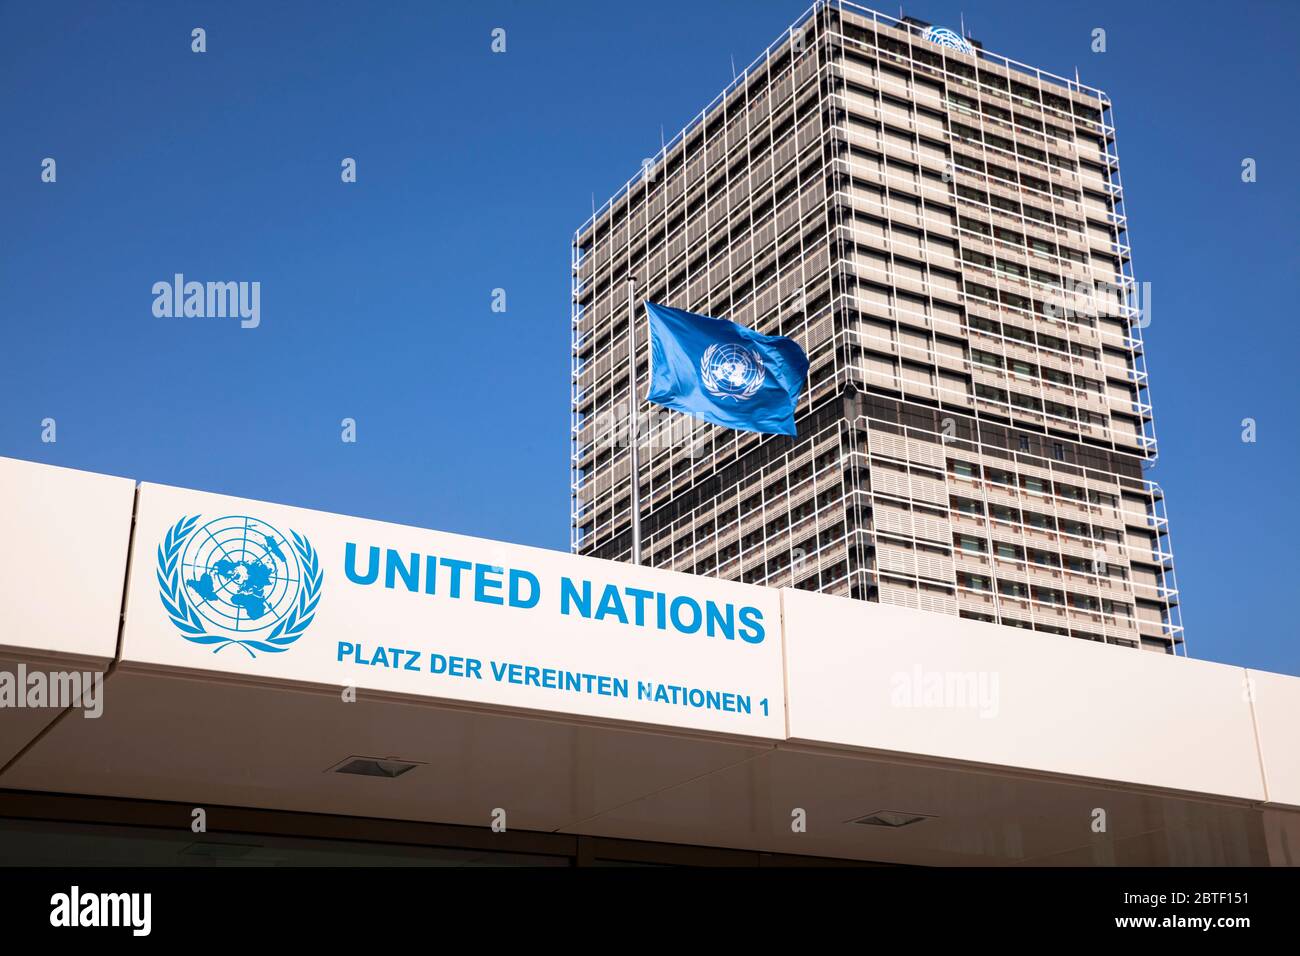 Entrada al Campus de las Naciones Unidas con el edificio de oficinas Tall Eugen, que alberga varias organizaciones de las Naciones Unidas, Bonn, Renania del Norte-Westfalia, Alemania. Foto de stock